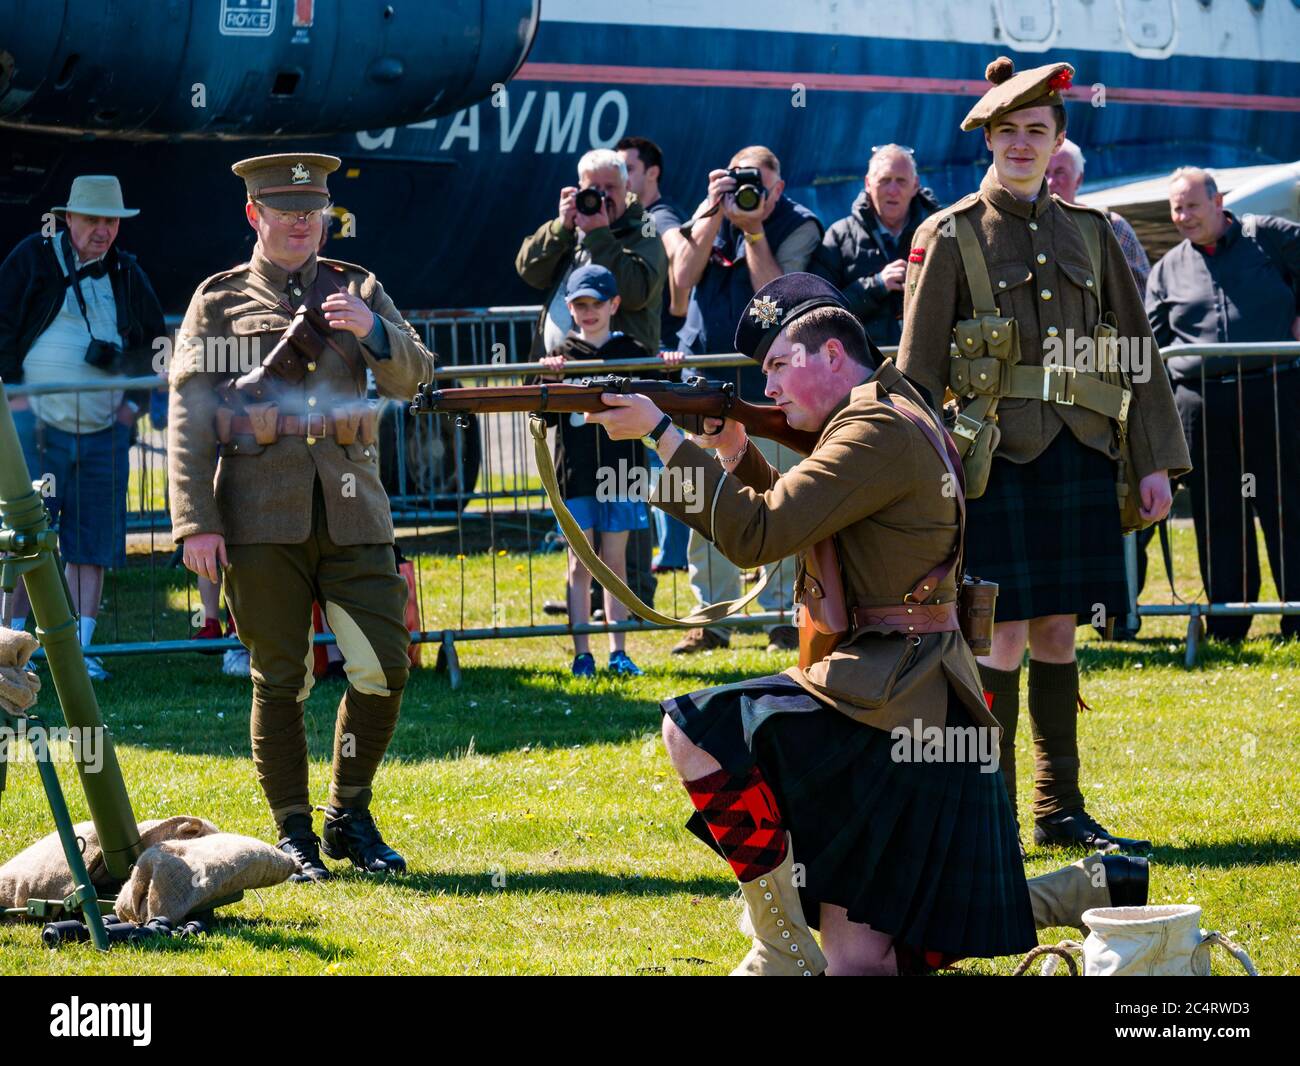 Soldati scozzesi della prima guerra in fucile da fuoco da kilt, dimostrazione di eventi di esperienza bellica, East Fortune, East Lothian, Scozia, Regno Unito Foto Stock